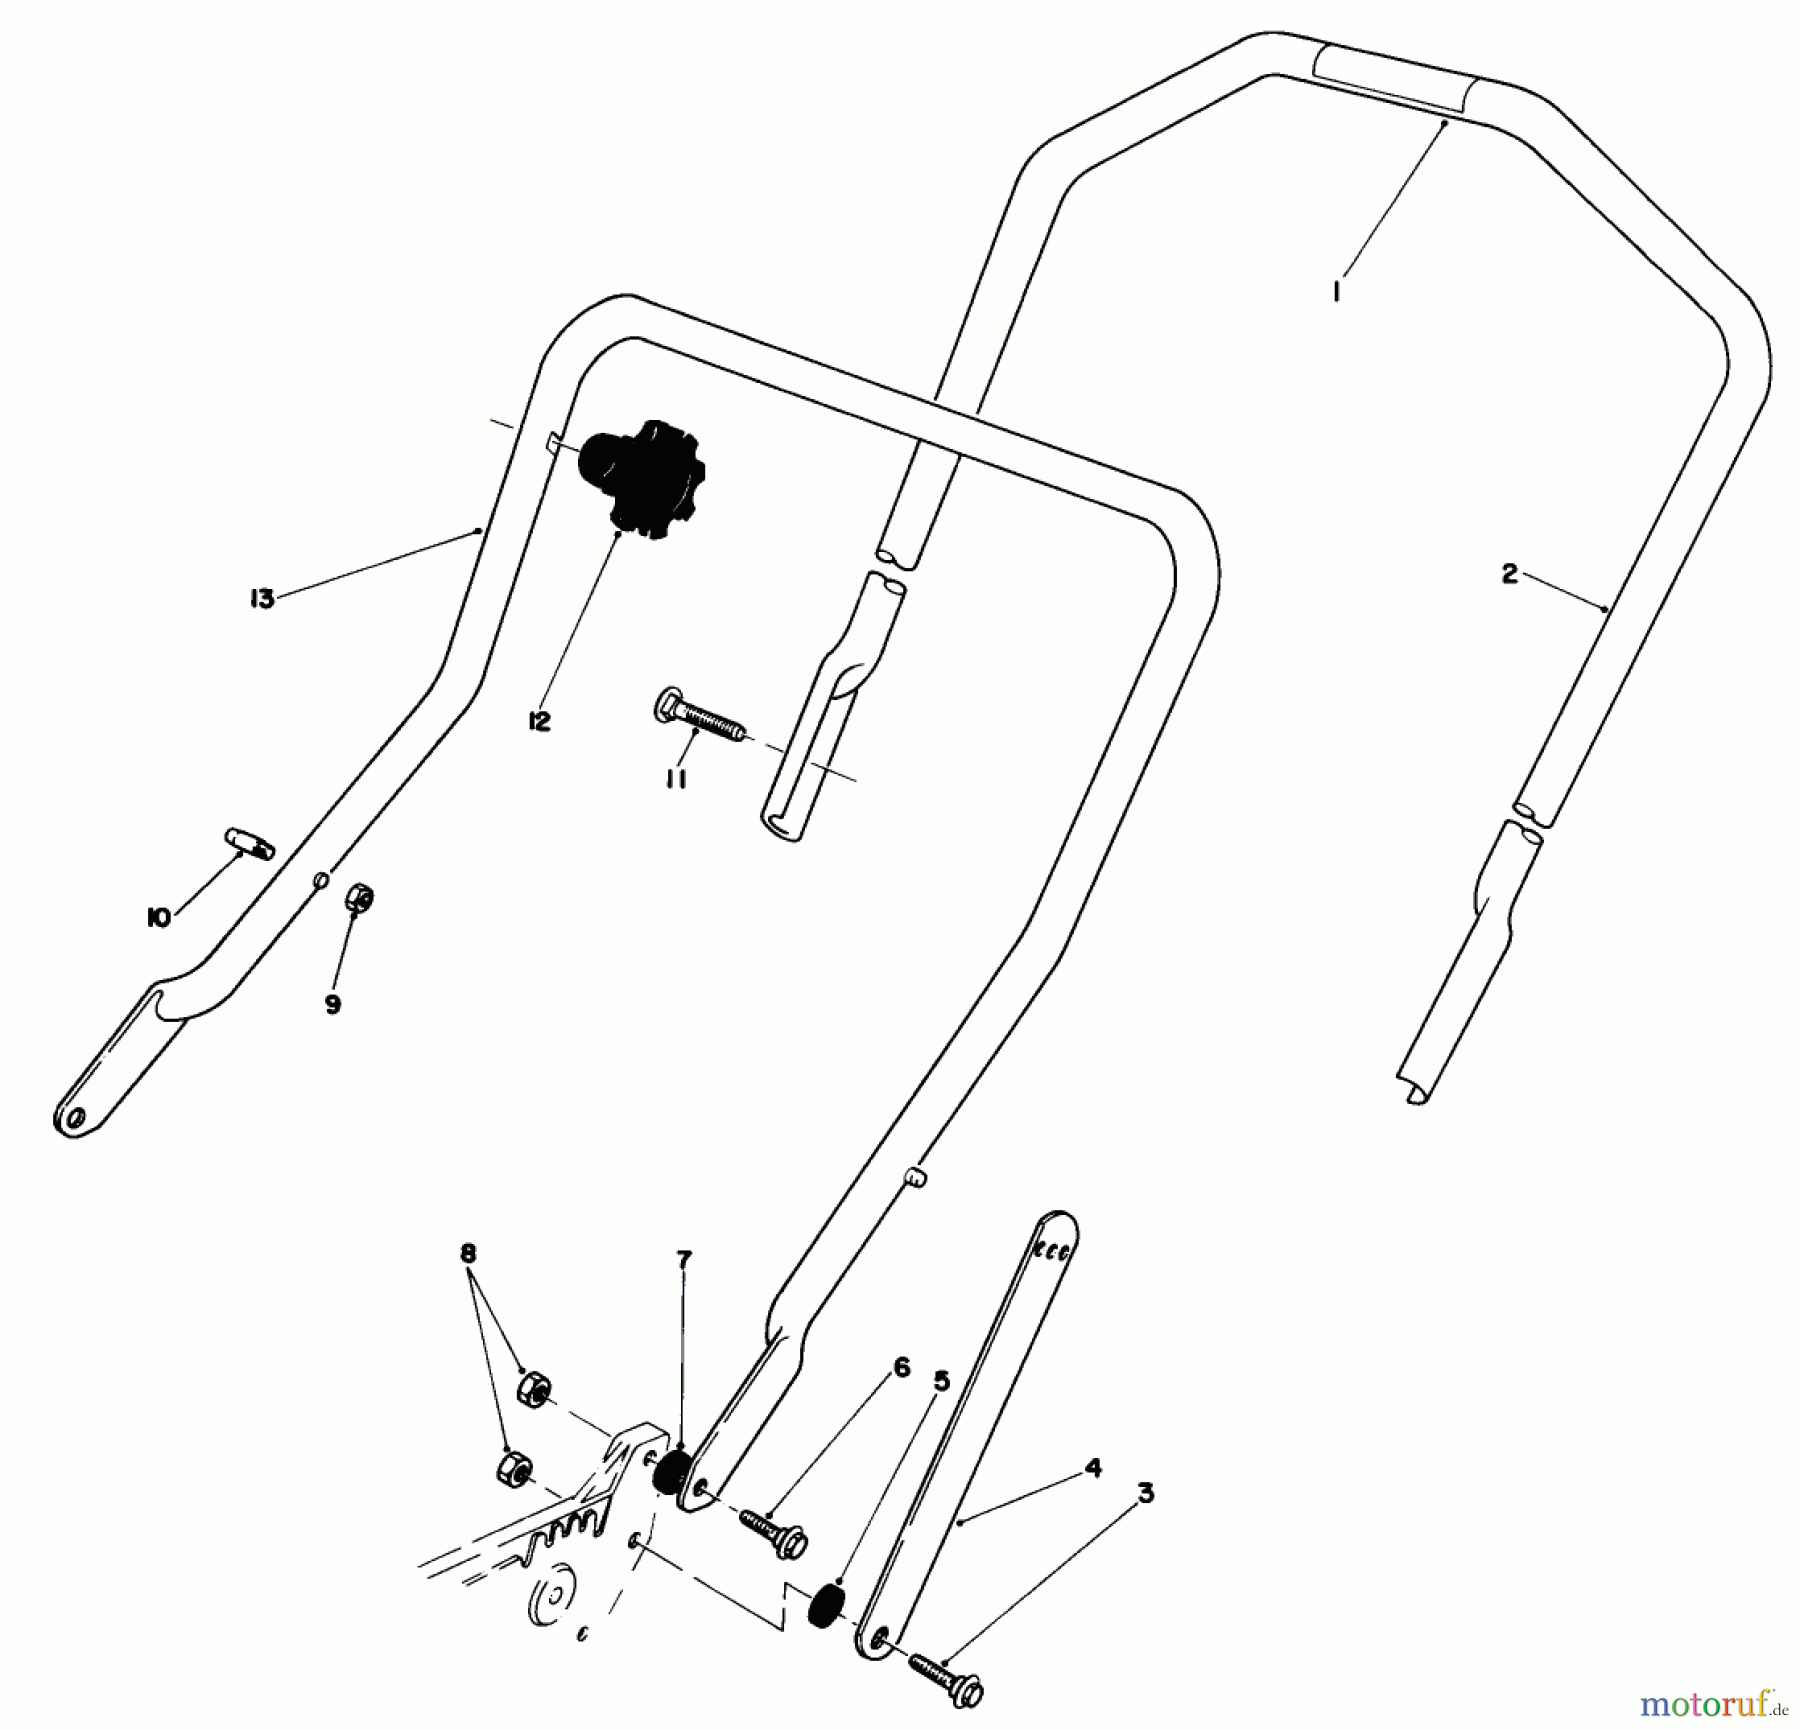  Toro Neu Mowers, Walk-Behind Seite 1 20581 - Toro Lawnmower, 1986 (6000001-6999999) HANDLE ASSEMBLY